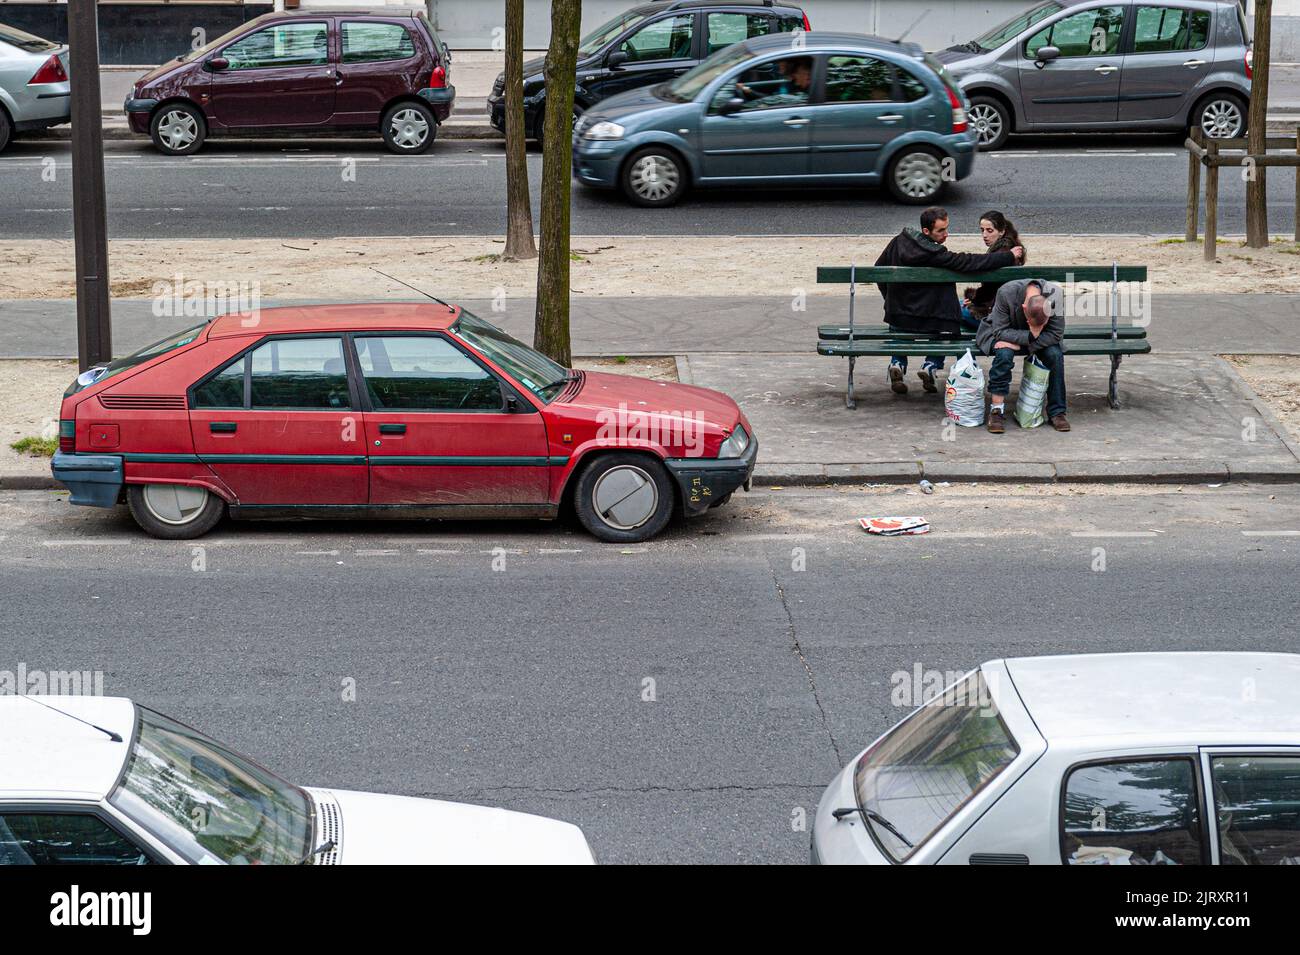 Un jeune couple regarde un homme en détresse. Paris, France. Banque D'Images